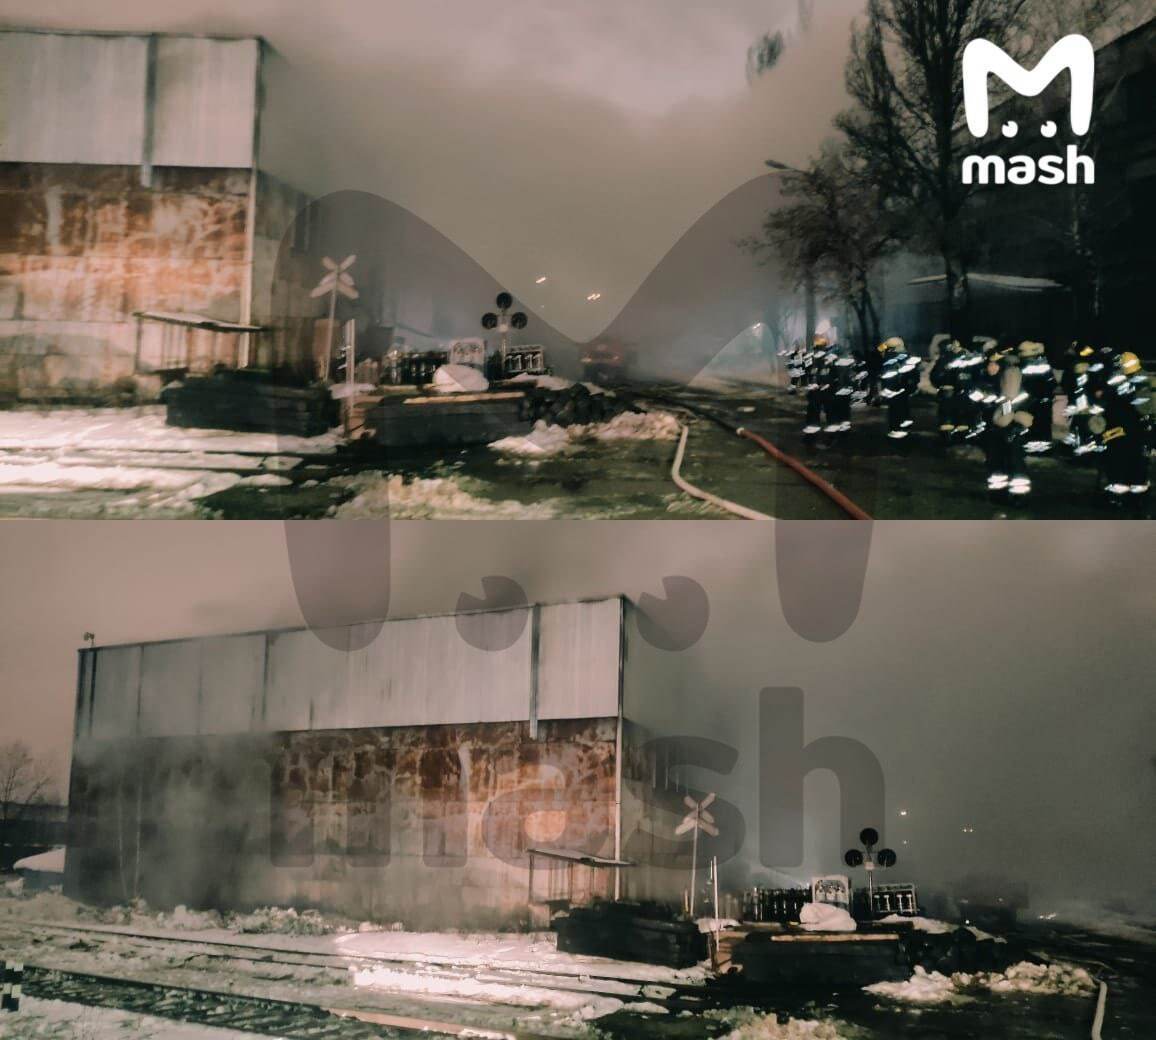 В Москве вспыхнул очередной масштабный пожар: горит склад с газовыми баллонами, слышны взрывы. Фото